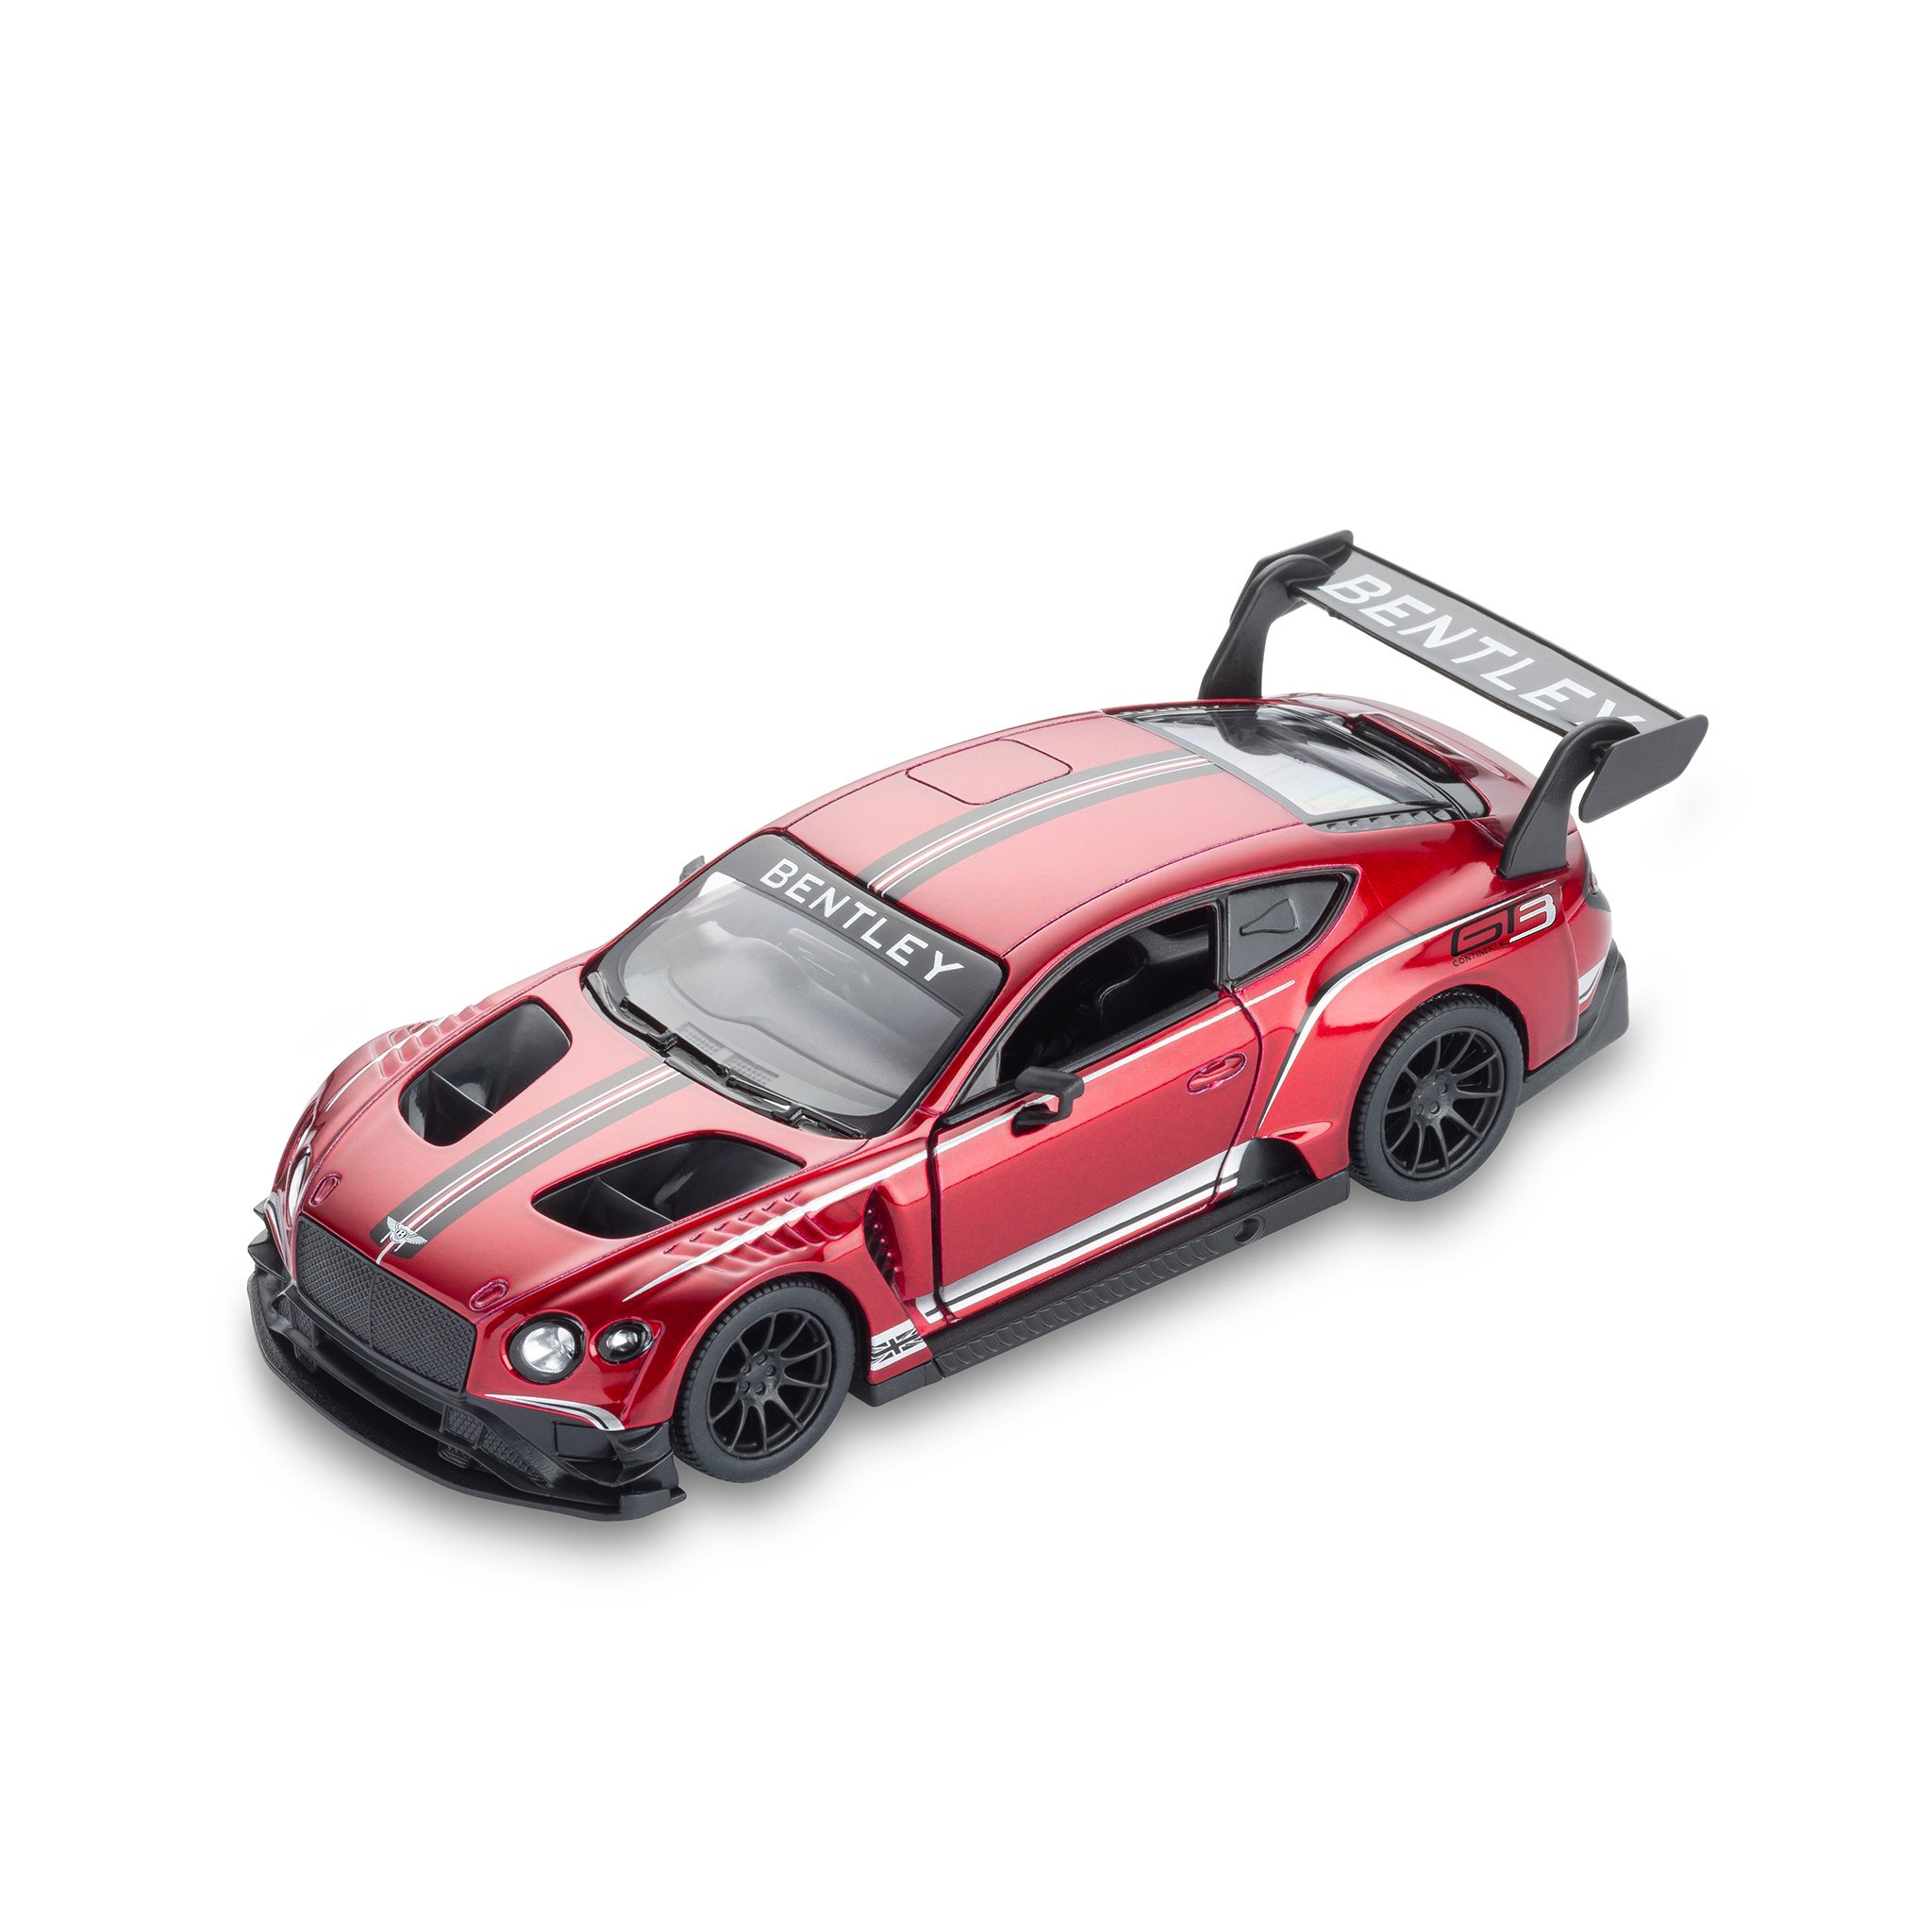 賓利 Continental GT3 玩具跑車 (紅色)